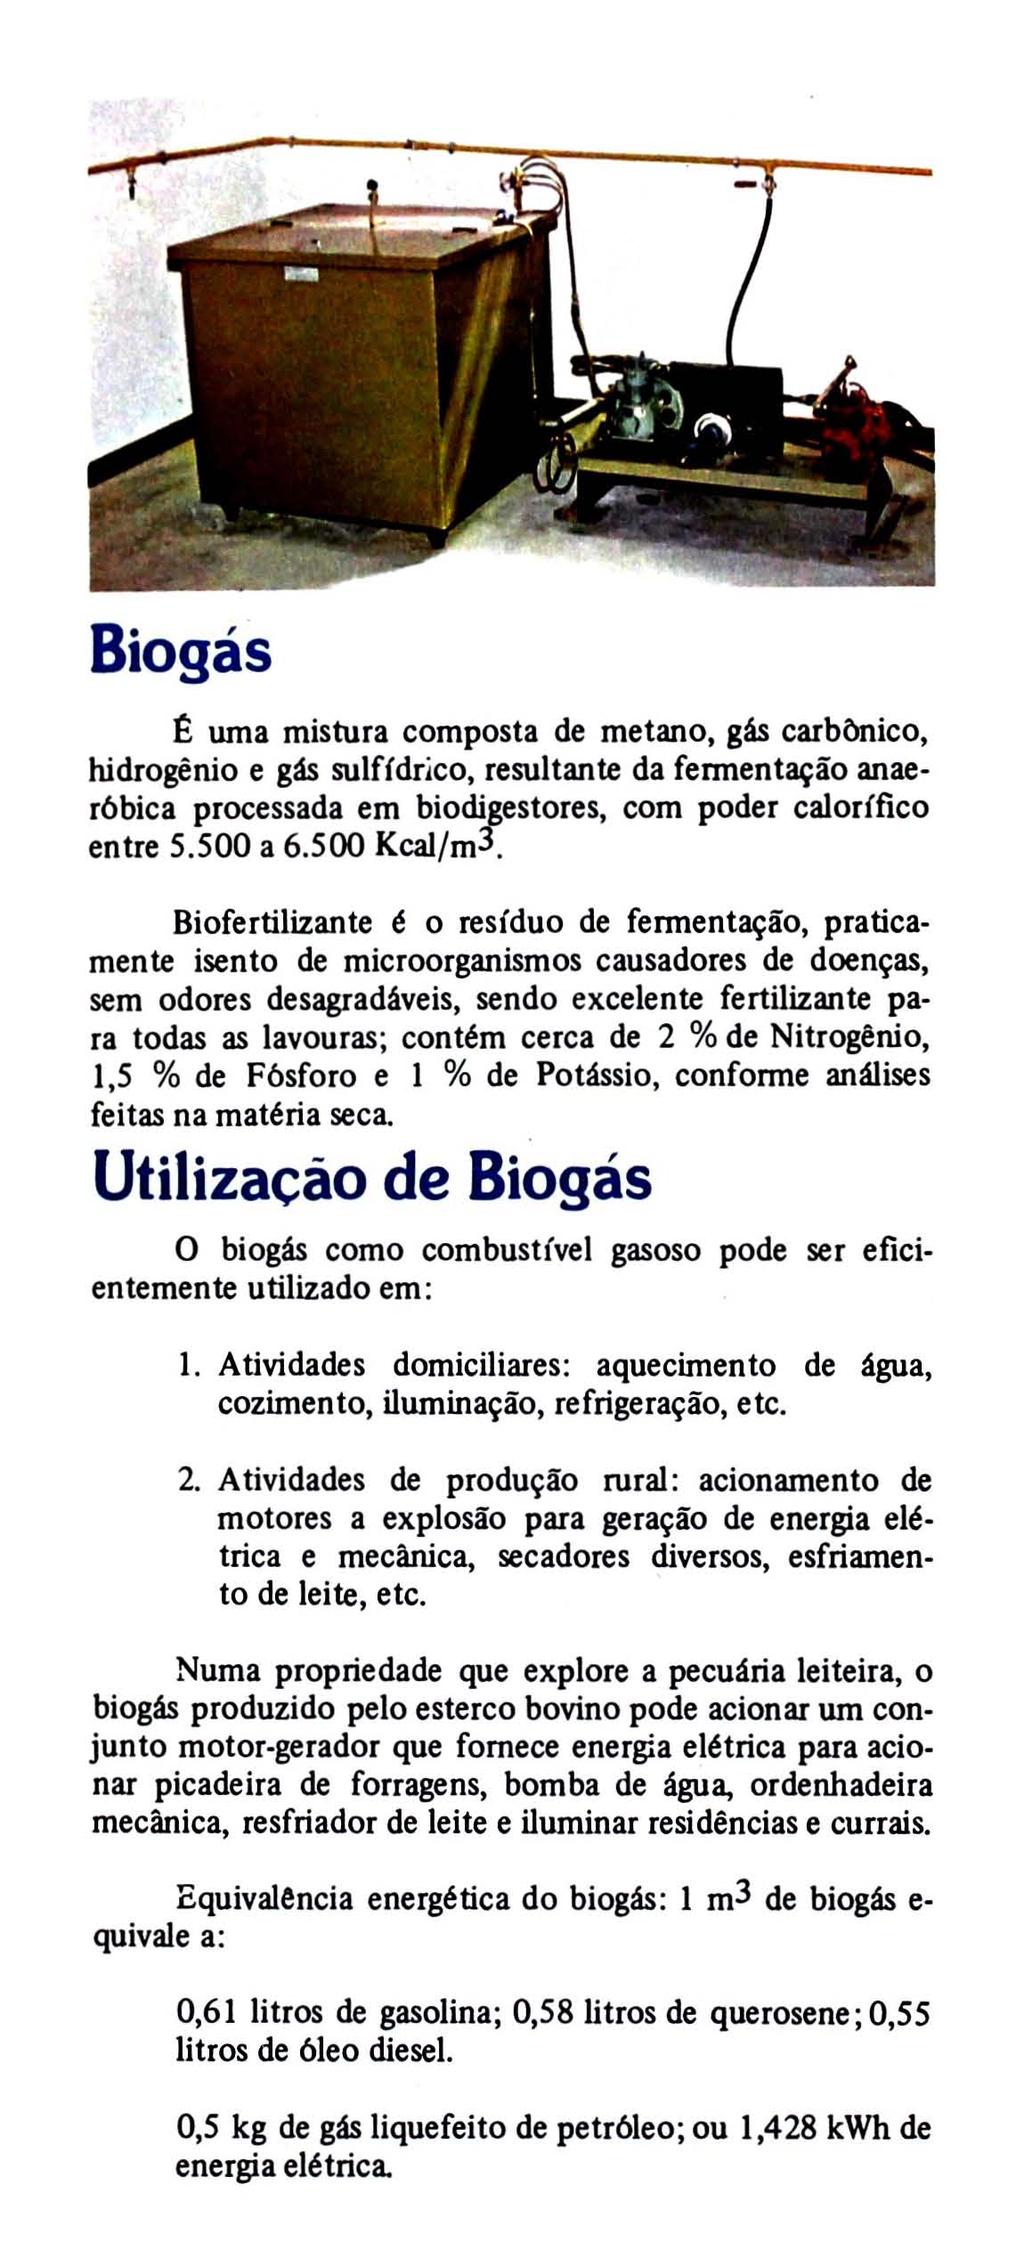 Biogás ~ uma mistura composta de metano, gás carbônico, hidrogênio e gás sulfídrico, resultante da fermentação anaer6bica processada em biodigestores, com poder calorífico entre 5.500 a 6.500 Kcal/m3.